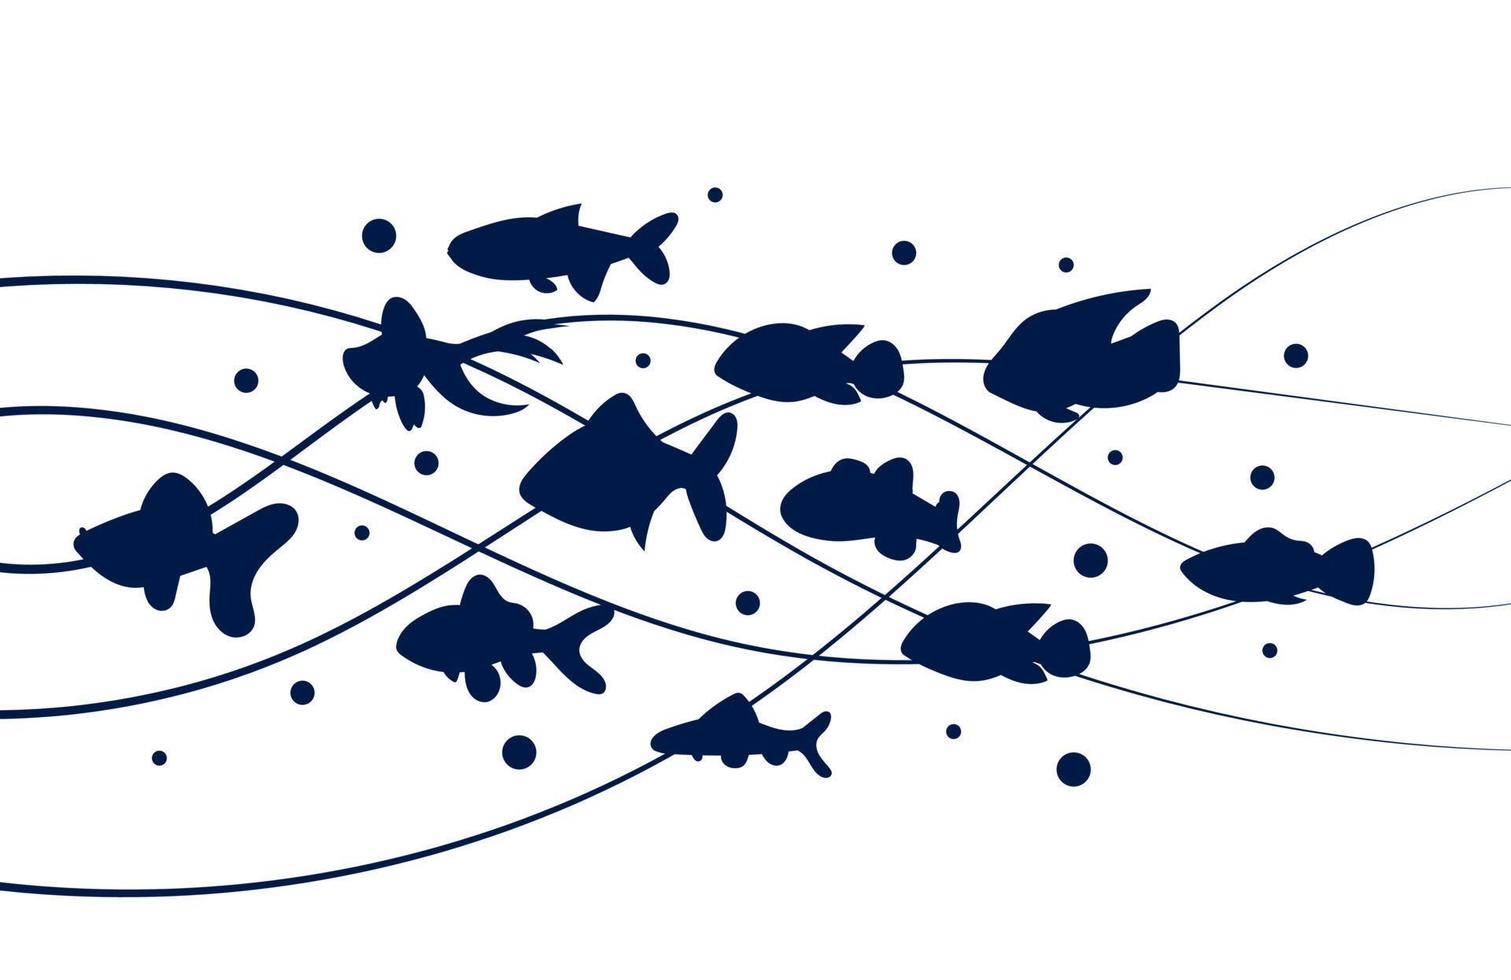 un troupeau de silhouette de poisson flotte sur les vagues isolées sur fond blanc. un groupe d'animaux marins nagent ensemble et un design créatif de la pègre. jeu de dessin animé d'illustration vectorielle de poisson vecteur